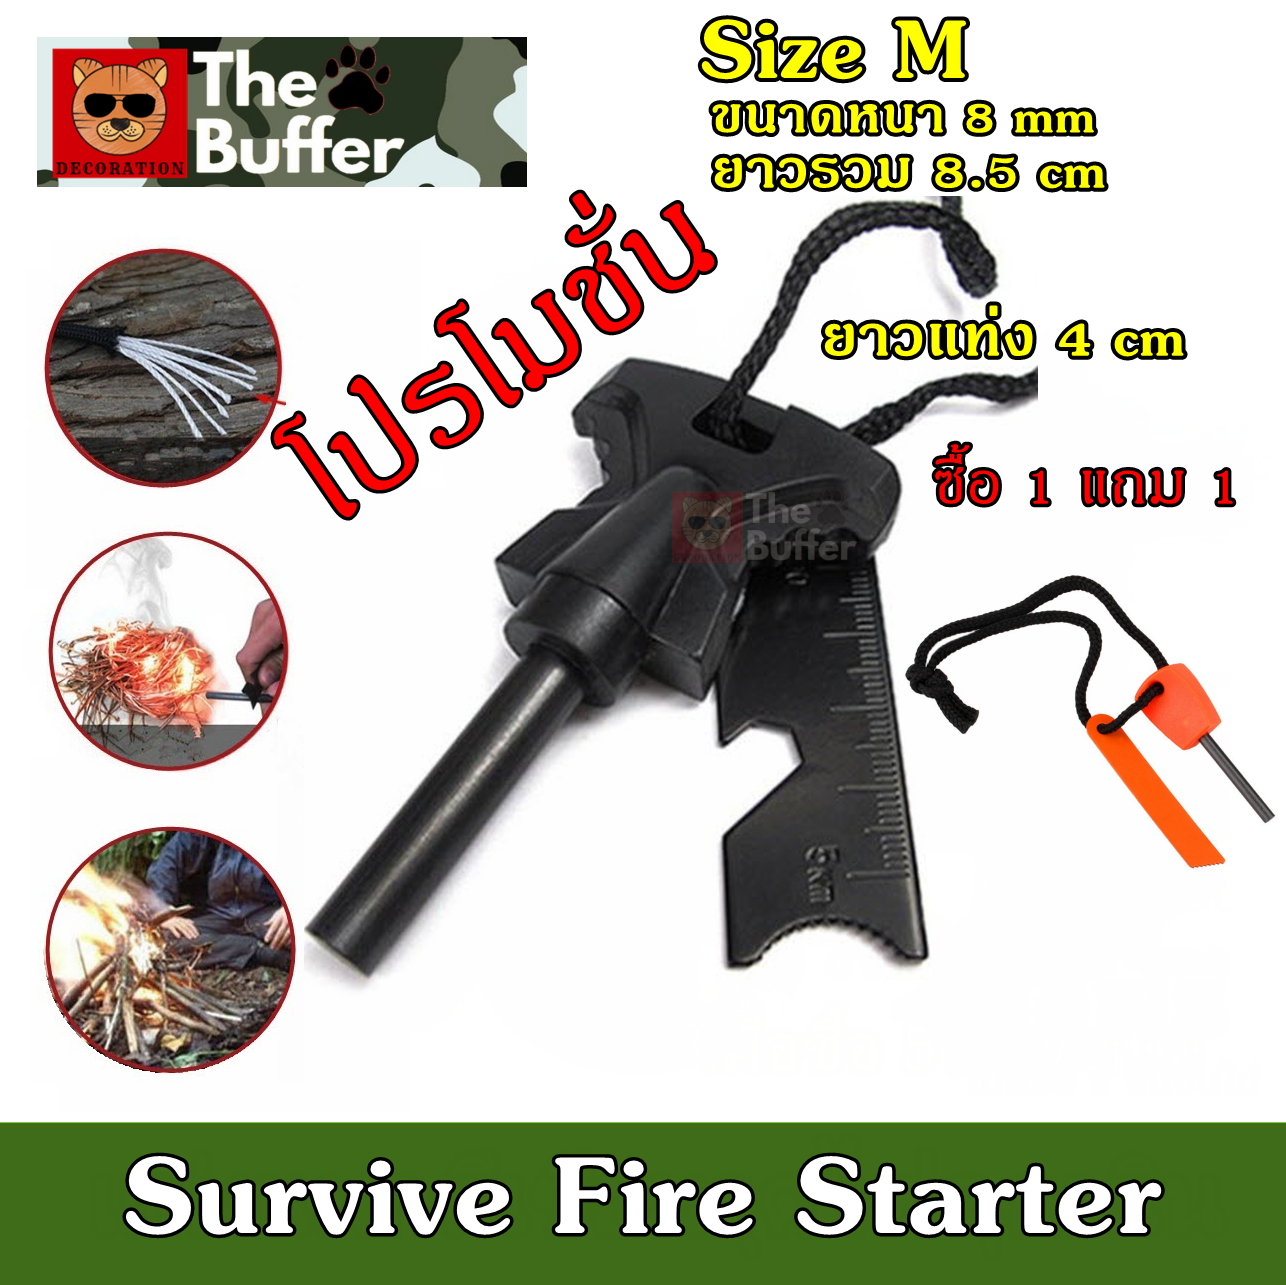 ซื้อ 1 แถม 1 แท่งจุดไฟ Size M  แท่ง magnesium ที่จุดไฟอเนกประสงค์ ไม้ขีดไฟเดินป่า ที่จุดไฟในป่า แท่งแมกนีเซียม แท่งจุดไฟฉุกเฉิน ไม้ขีดไฟตั้งแคมป์ Flint Striker Fire Starter Outdoor Camping Survival Magnesium Flint Scraper Stone Fire Starter Lighter Kit